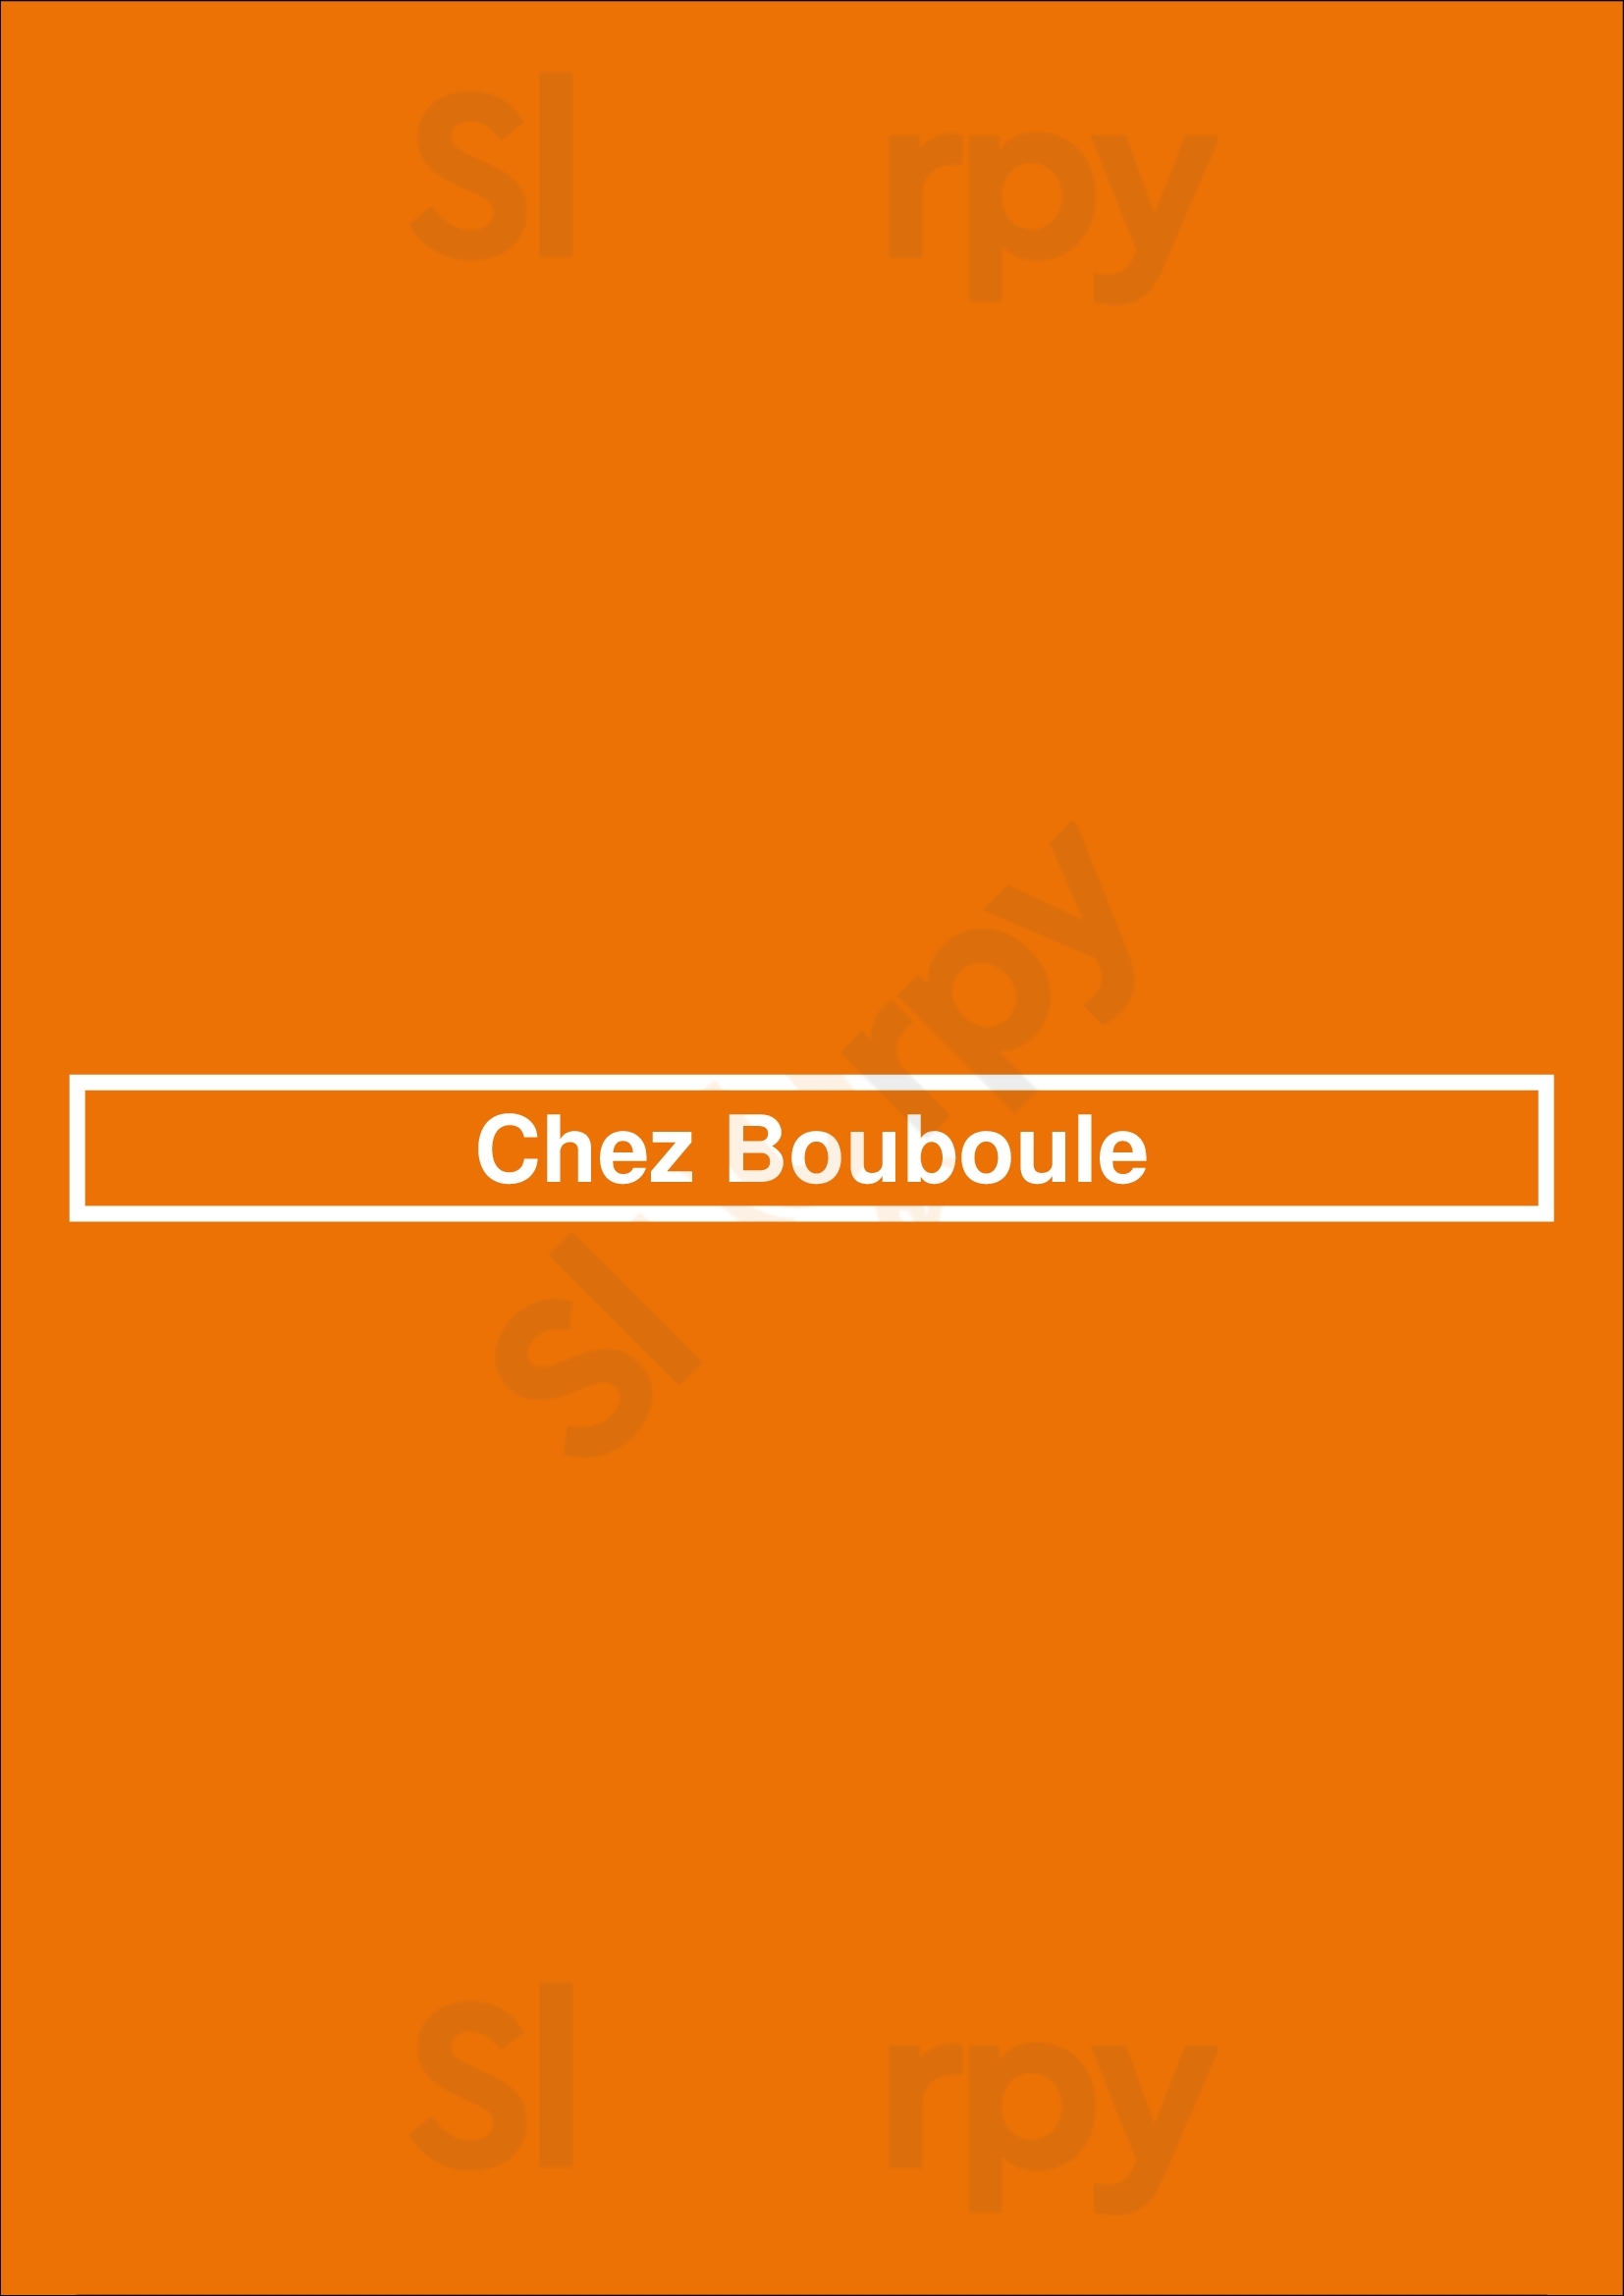 Chez Bouboule Dinant Menu - 1